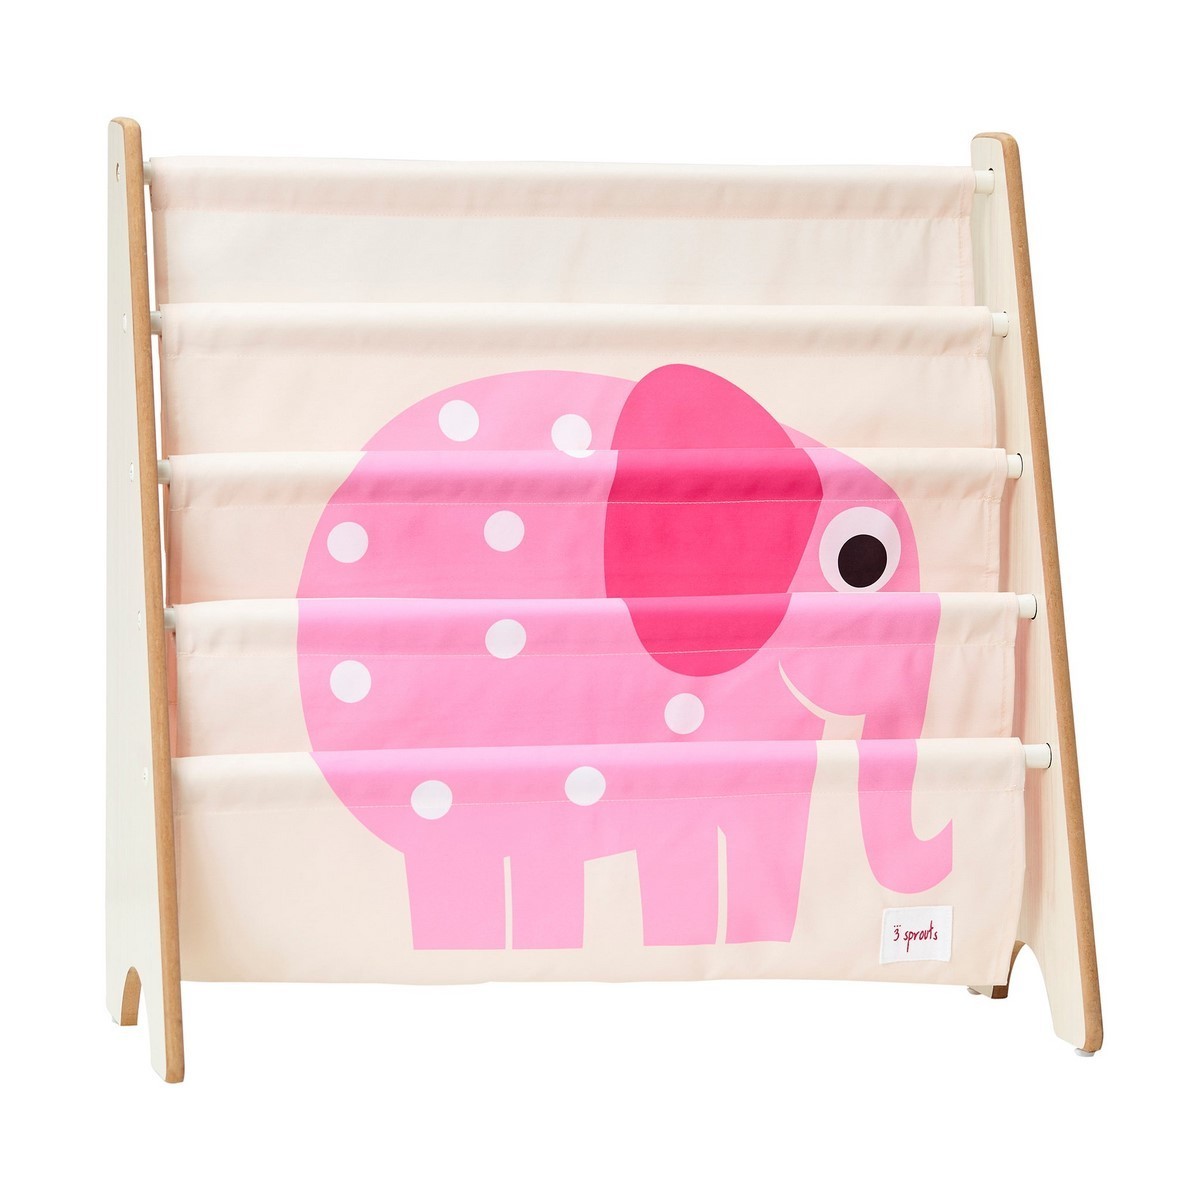 Stojan na knížky 3 SPROUTS - Růžový slon bookcase pink elephant